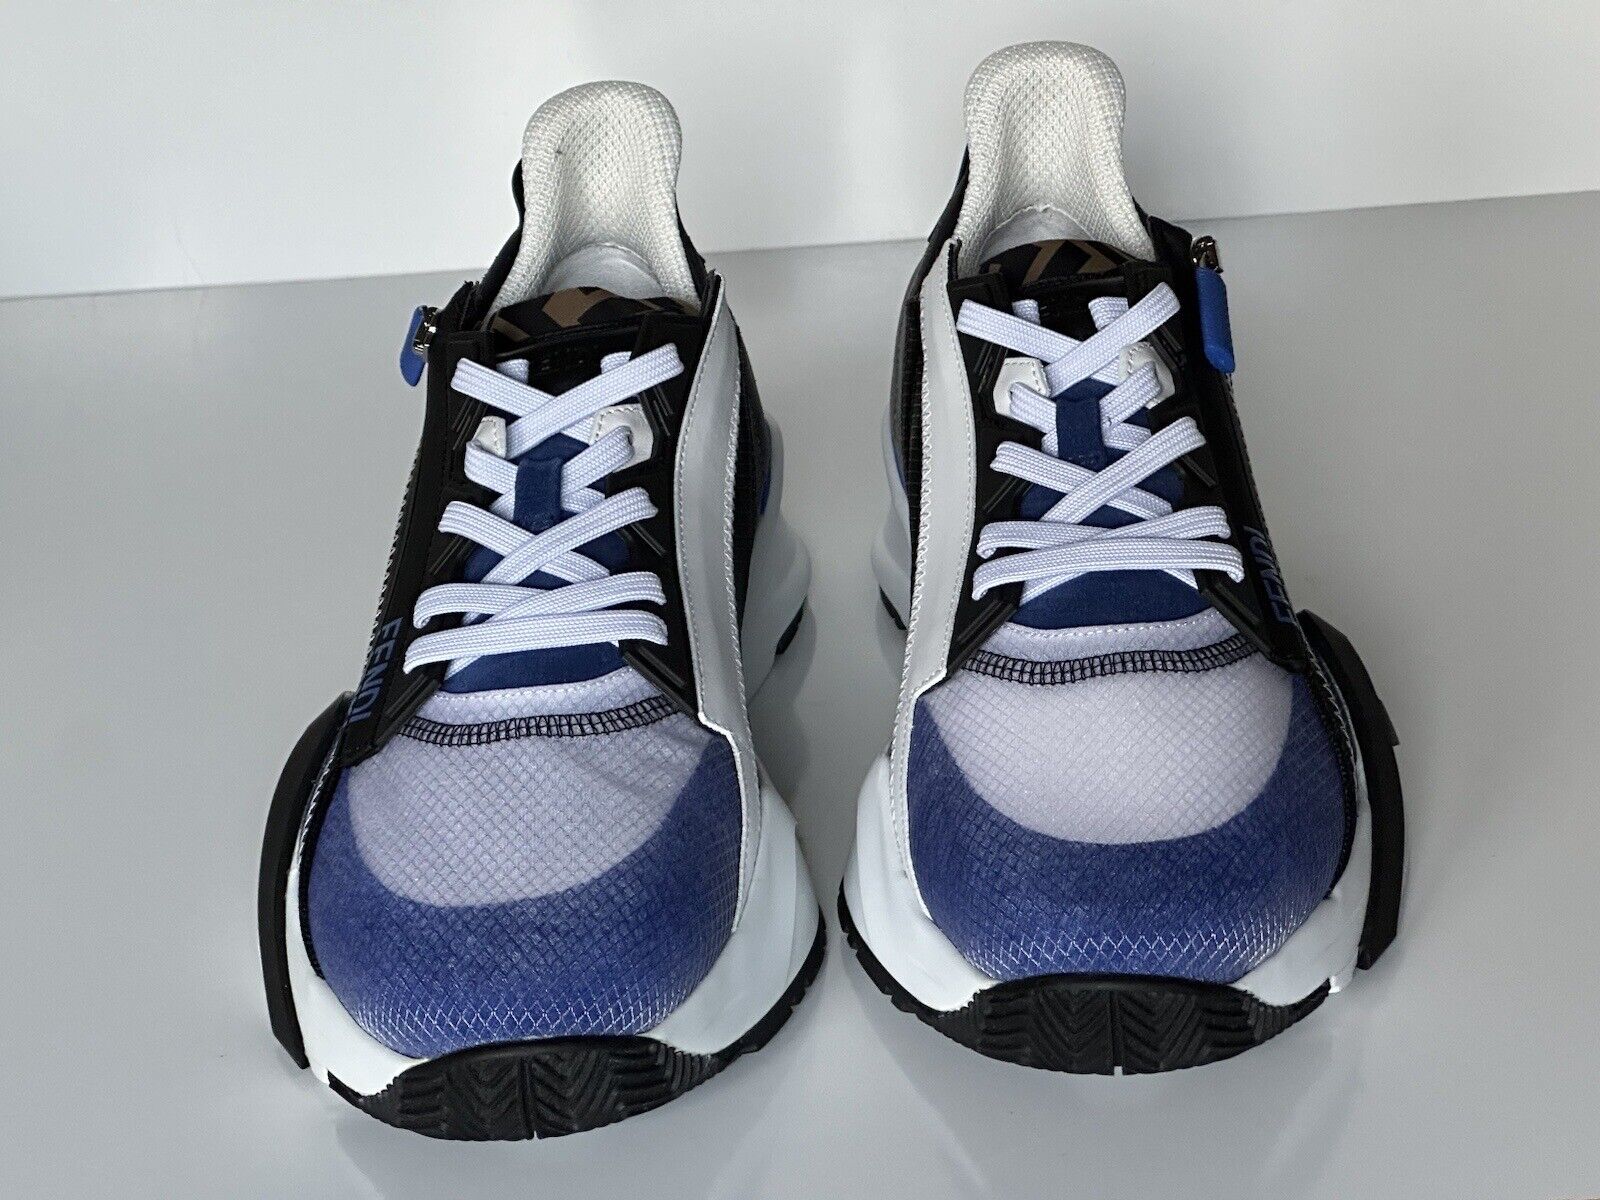 NIB 870 $ Fendi Flow Herren-Sneaker aus Leder/Stoff Blau 13 US (46 Euro) 7E1392 IT